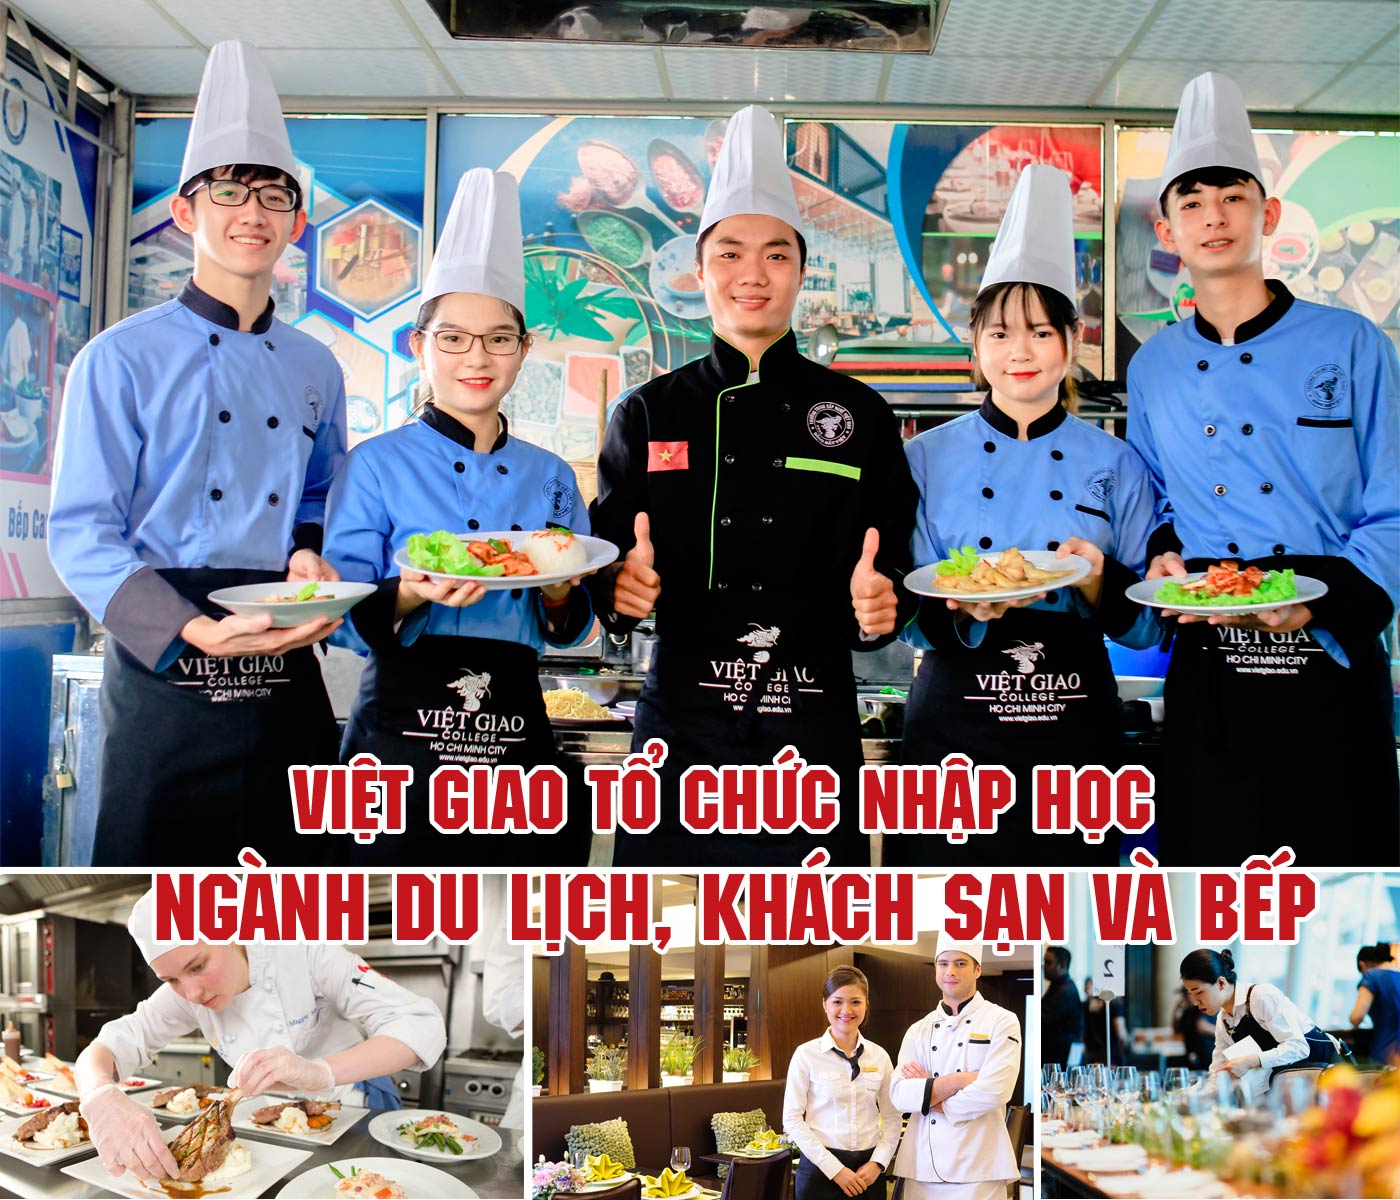 Việt Giao tổ chức nhập học ngành du lịch, khách sạn và bếp - Ảnh 1